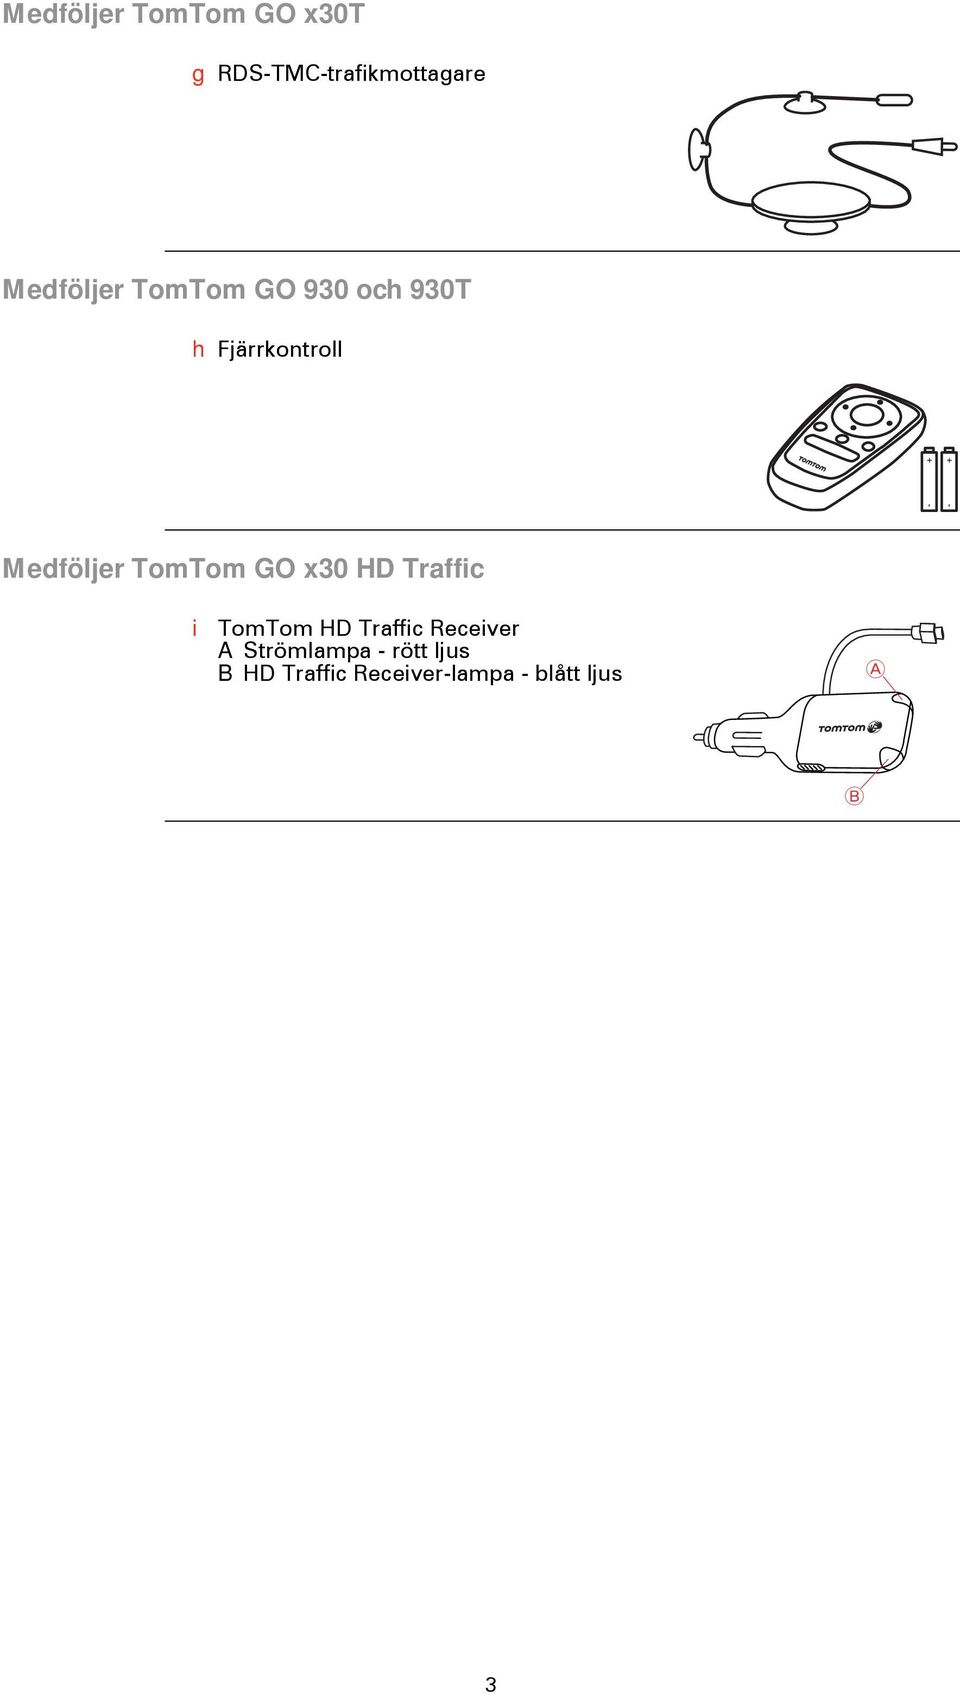 TomTom GO x30 HD Traffic i TomTom HD Traffic Receiver A